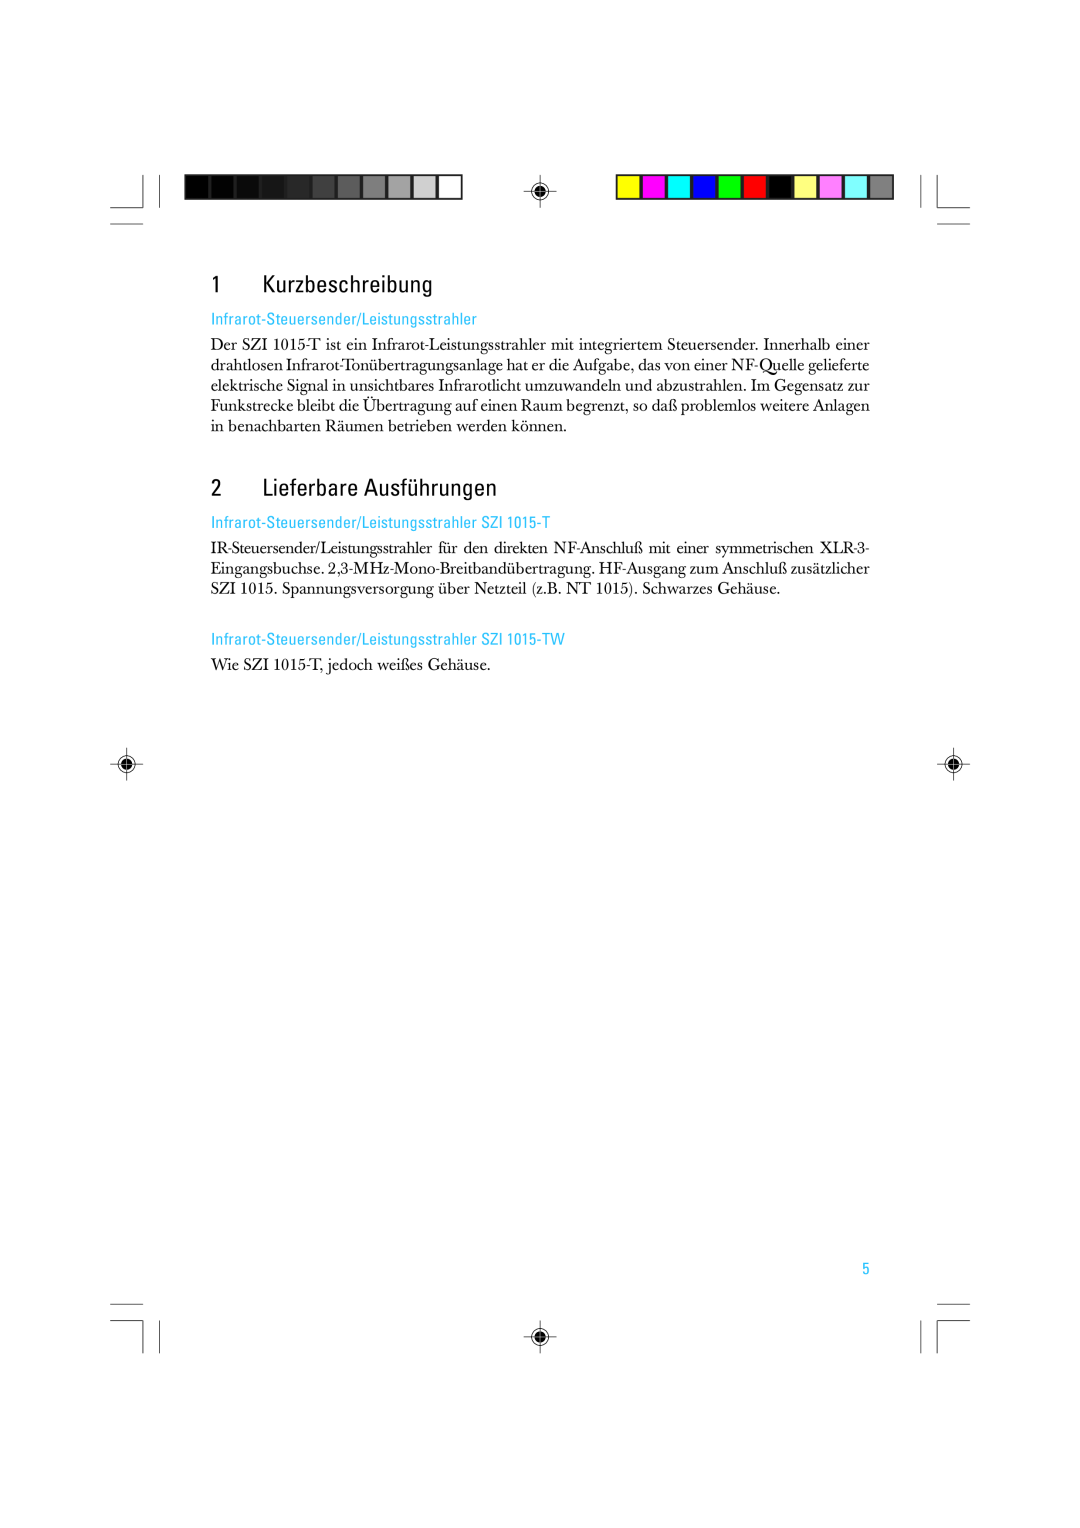 Sennheiser SZI 1015-T manual Kurzbeschreibung, Lieferbare Ausführungen, Infrarot-Steuersender/Leistungsstrahler 